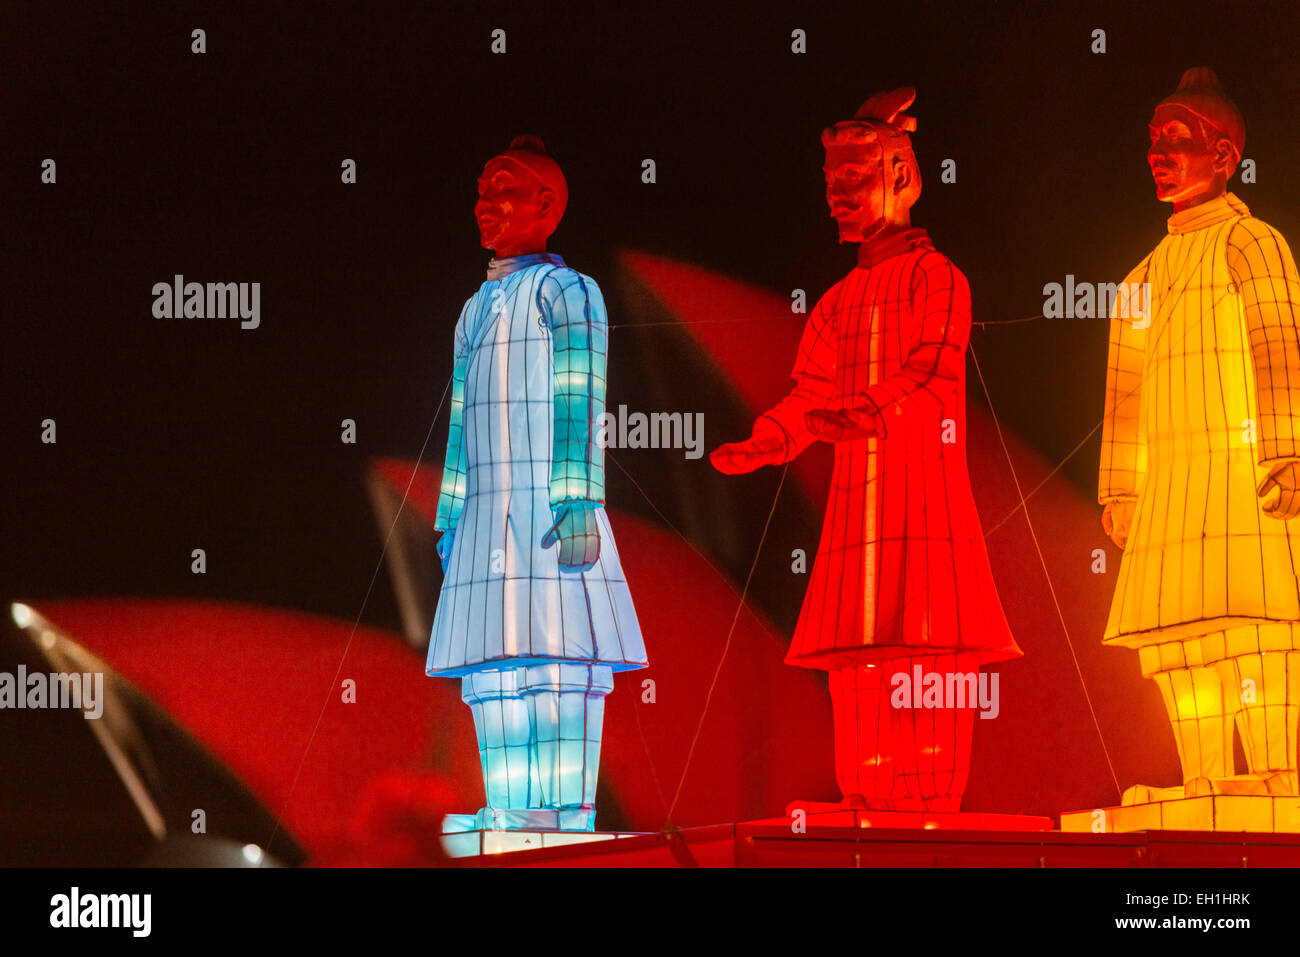 Les lanternes des guerriers de terre cuite en face de l'Opéra de Sydney illuminée en rouge la nuit pour marquer le Nouvel An chinois Banque D'Images